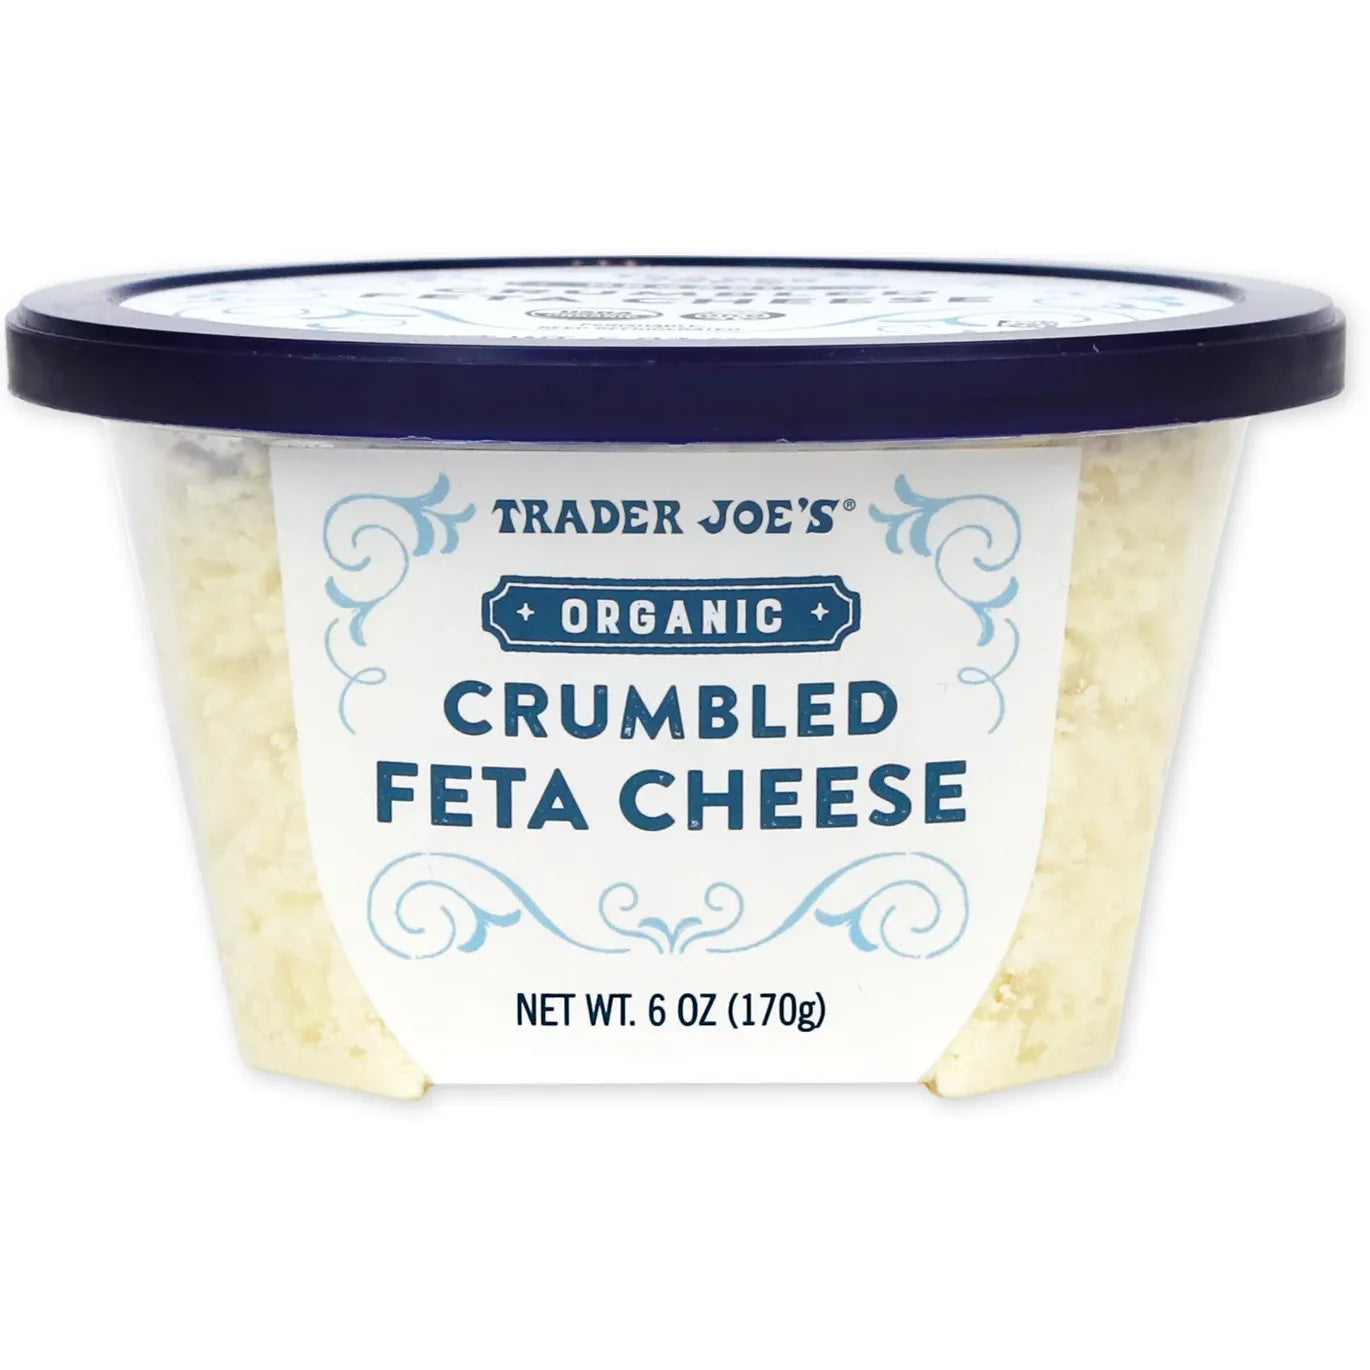 Organic Crumbled Feta Cheese